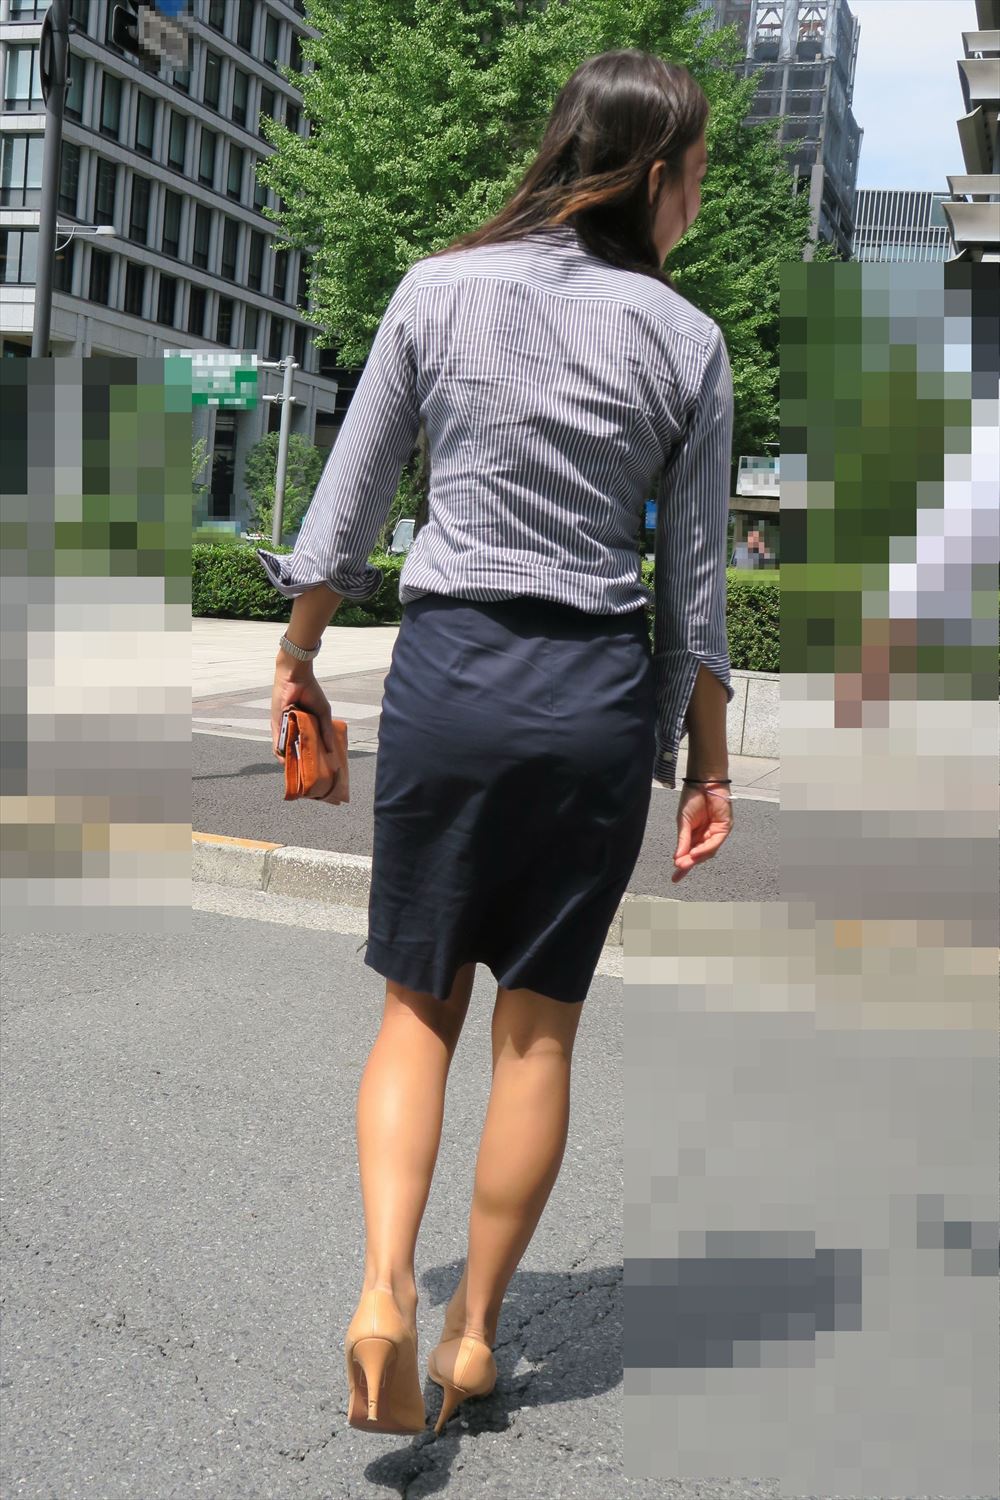 OLさんや就活女子のタイトスカートお尻を街撮りした素人エロ画像-182